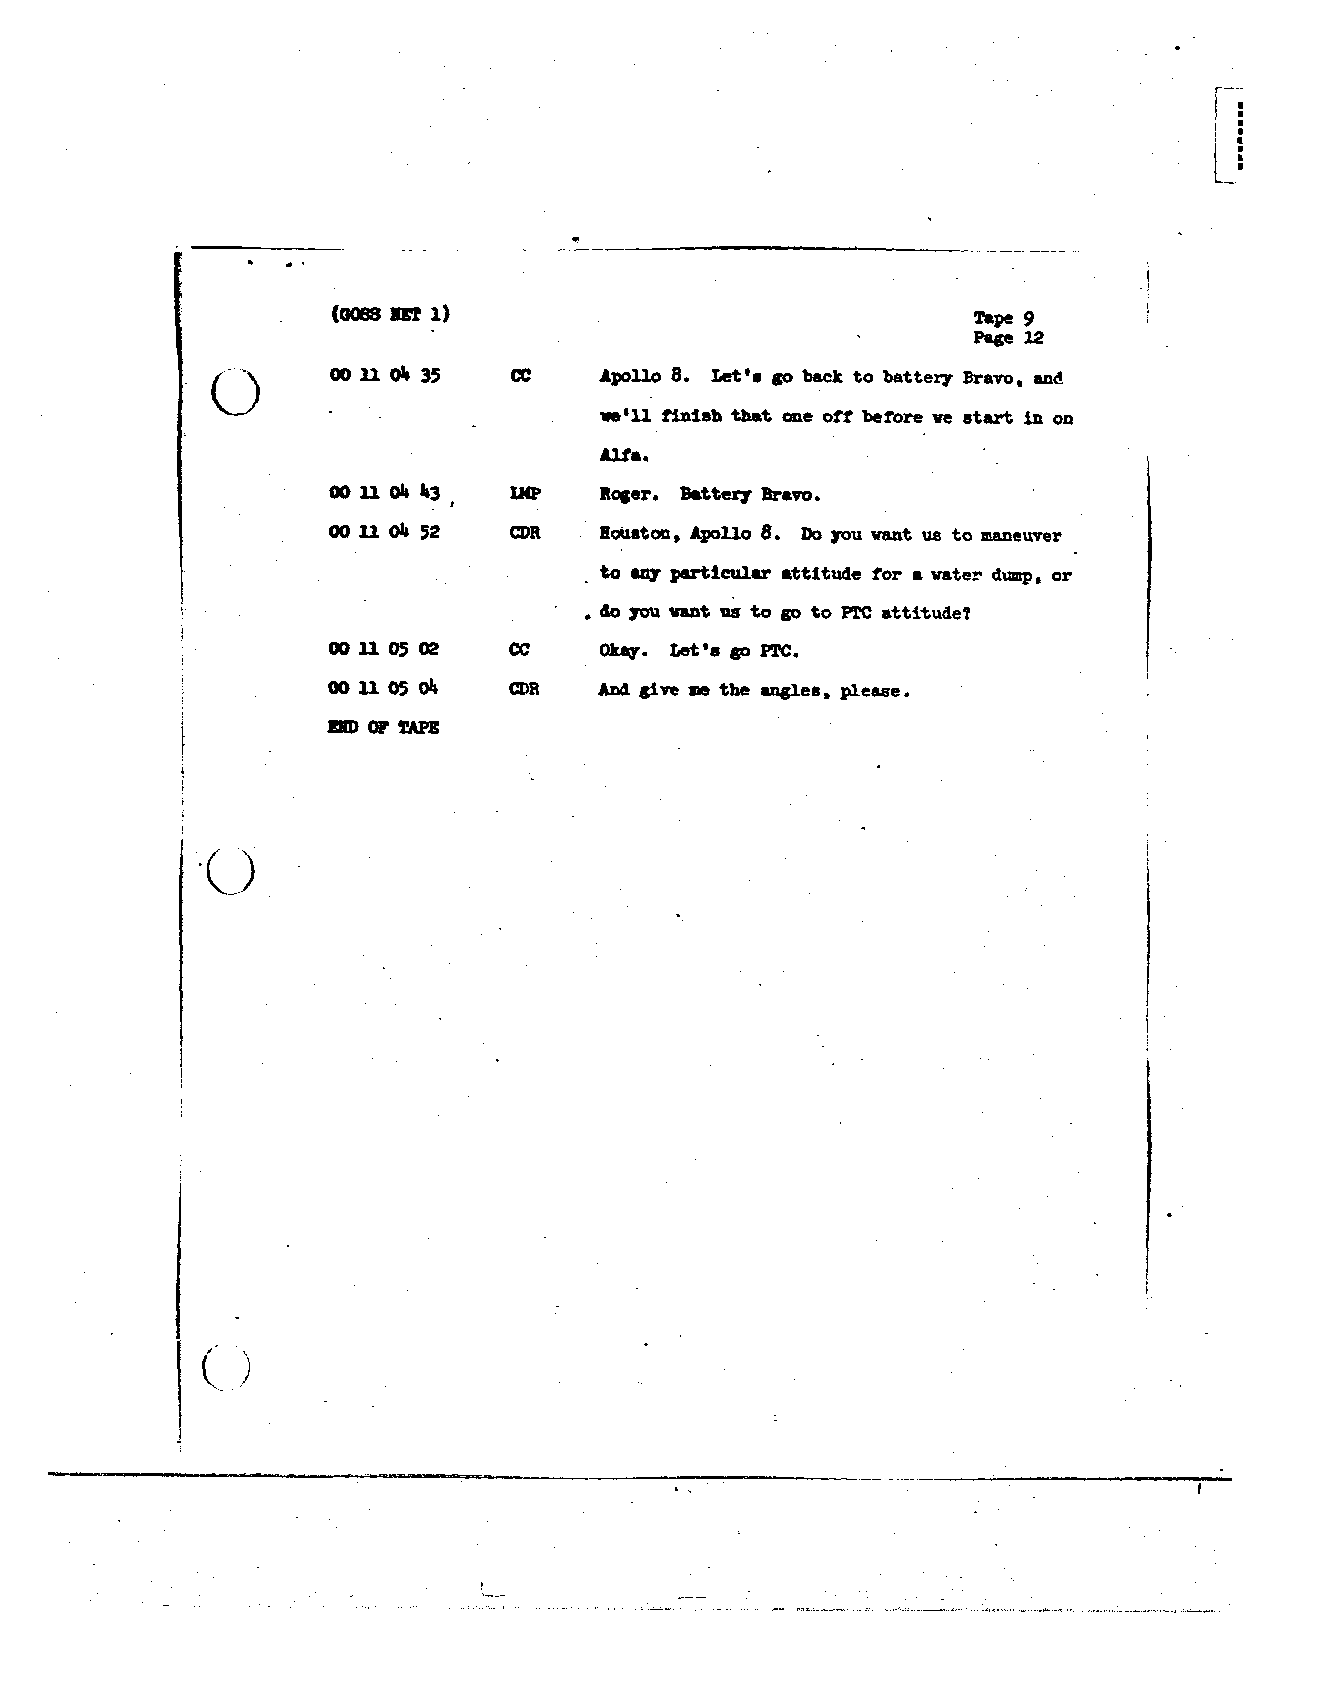 Page 91 of Apollo 8’s original transcript